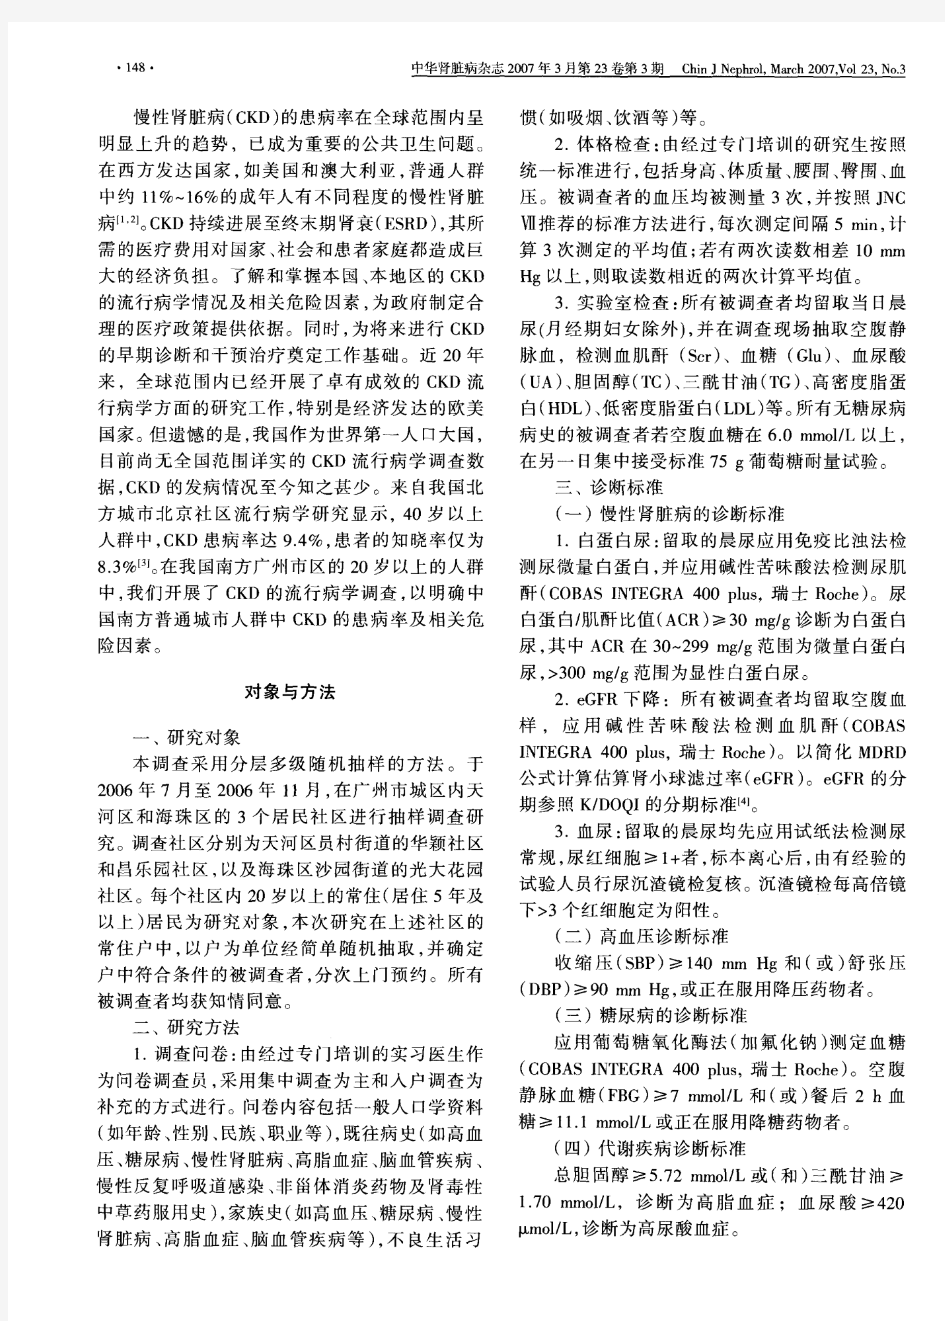 广州市城区普通人群中慢性肾脏病的流行病学研究